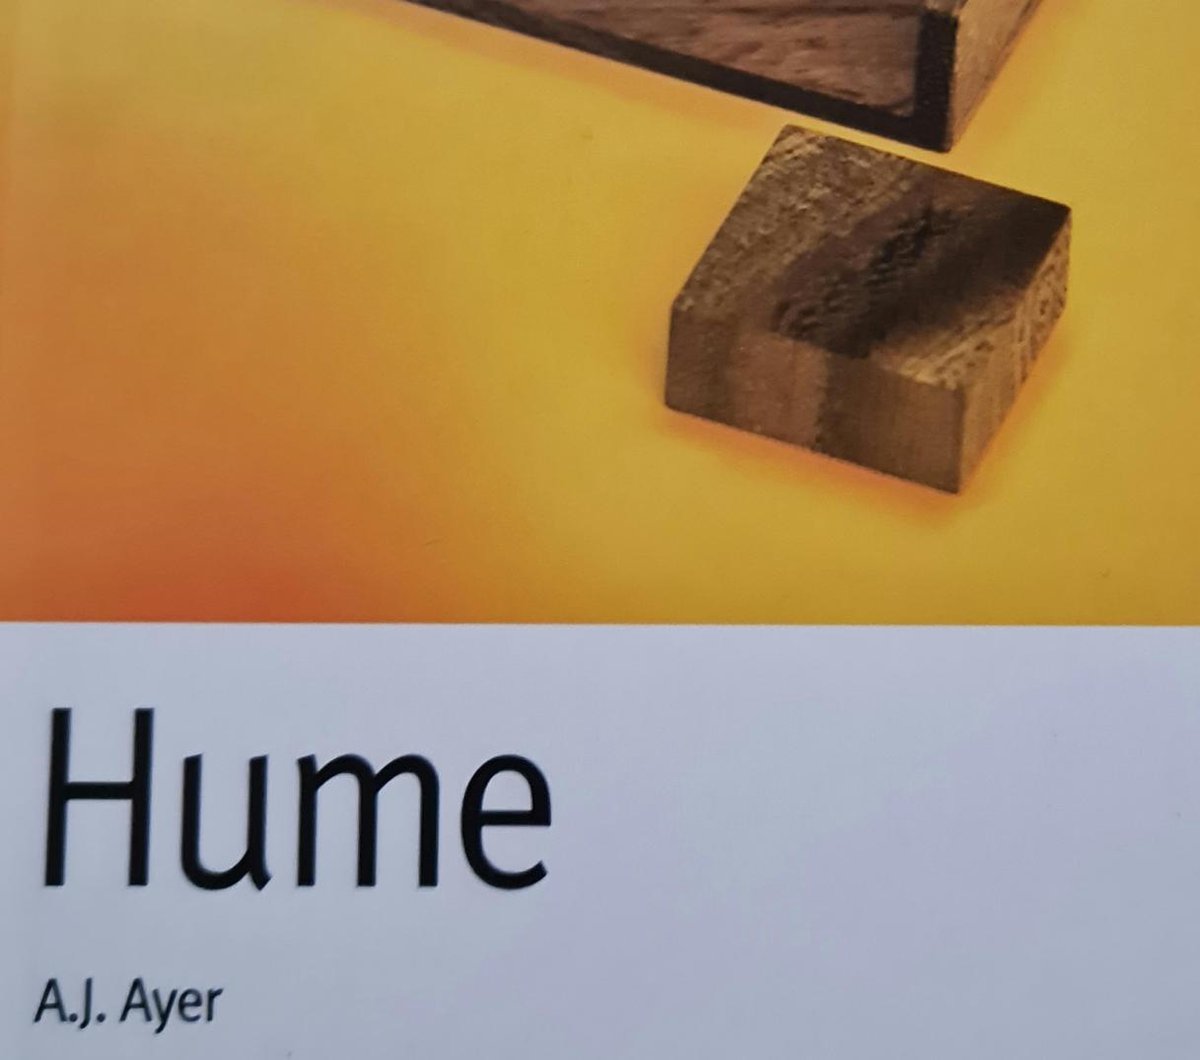 Hume